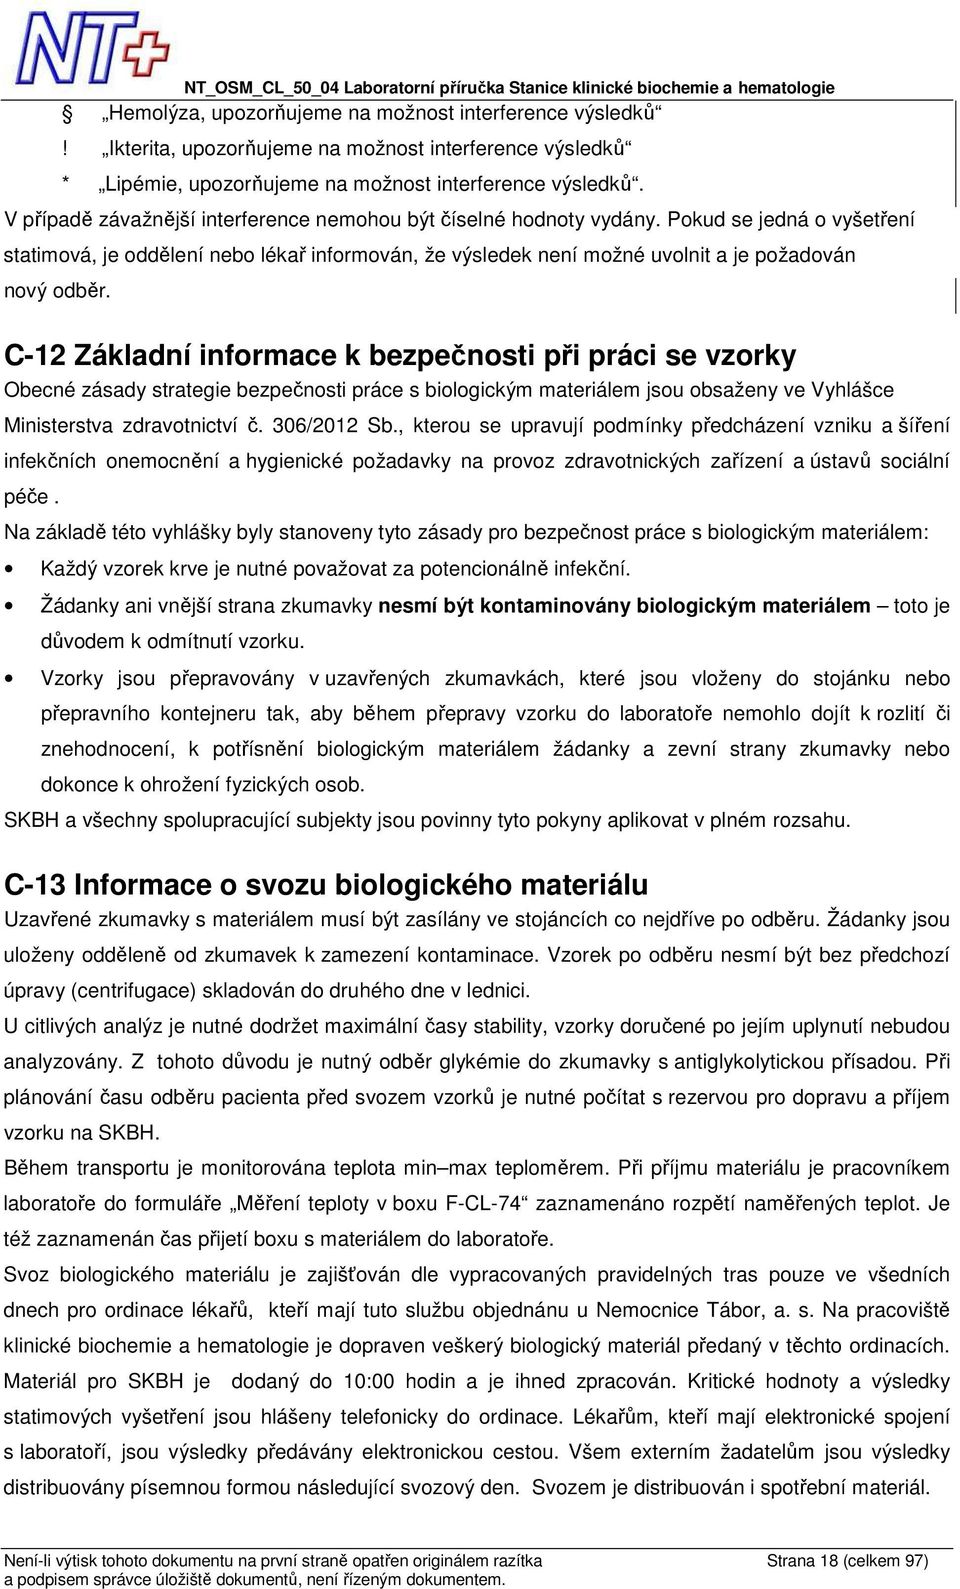 C-12 Základní informace k bezpečnosti při práci se vzorky Obecné zásady strategie bezpečnosti práce s biologickým materiálem jsou obsaženy ve Vyhlášce Ministerstva zdravotnictví č. 306/2012 Sb.